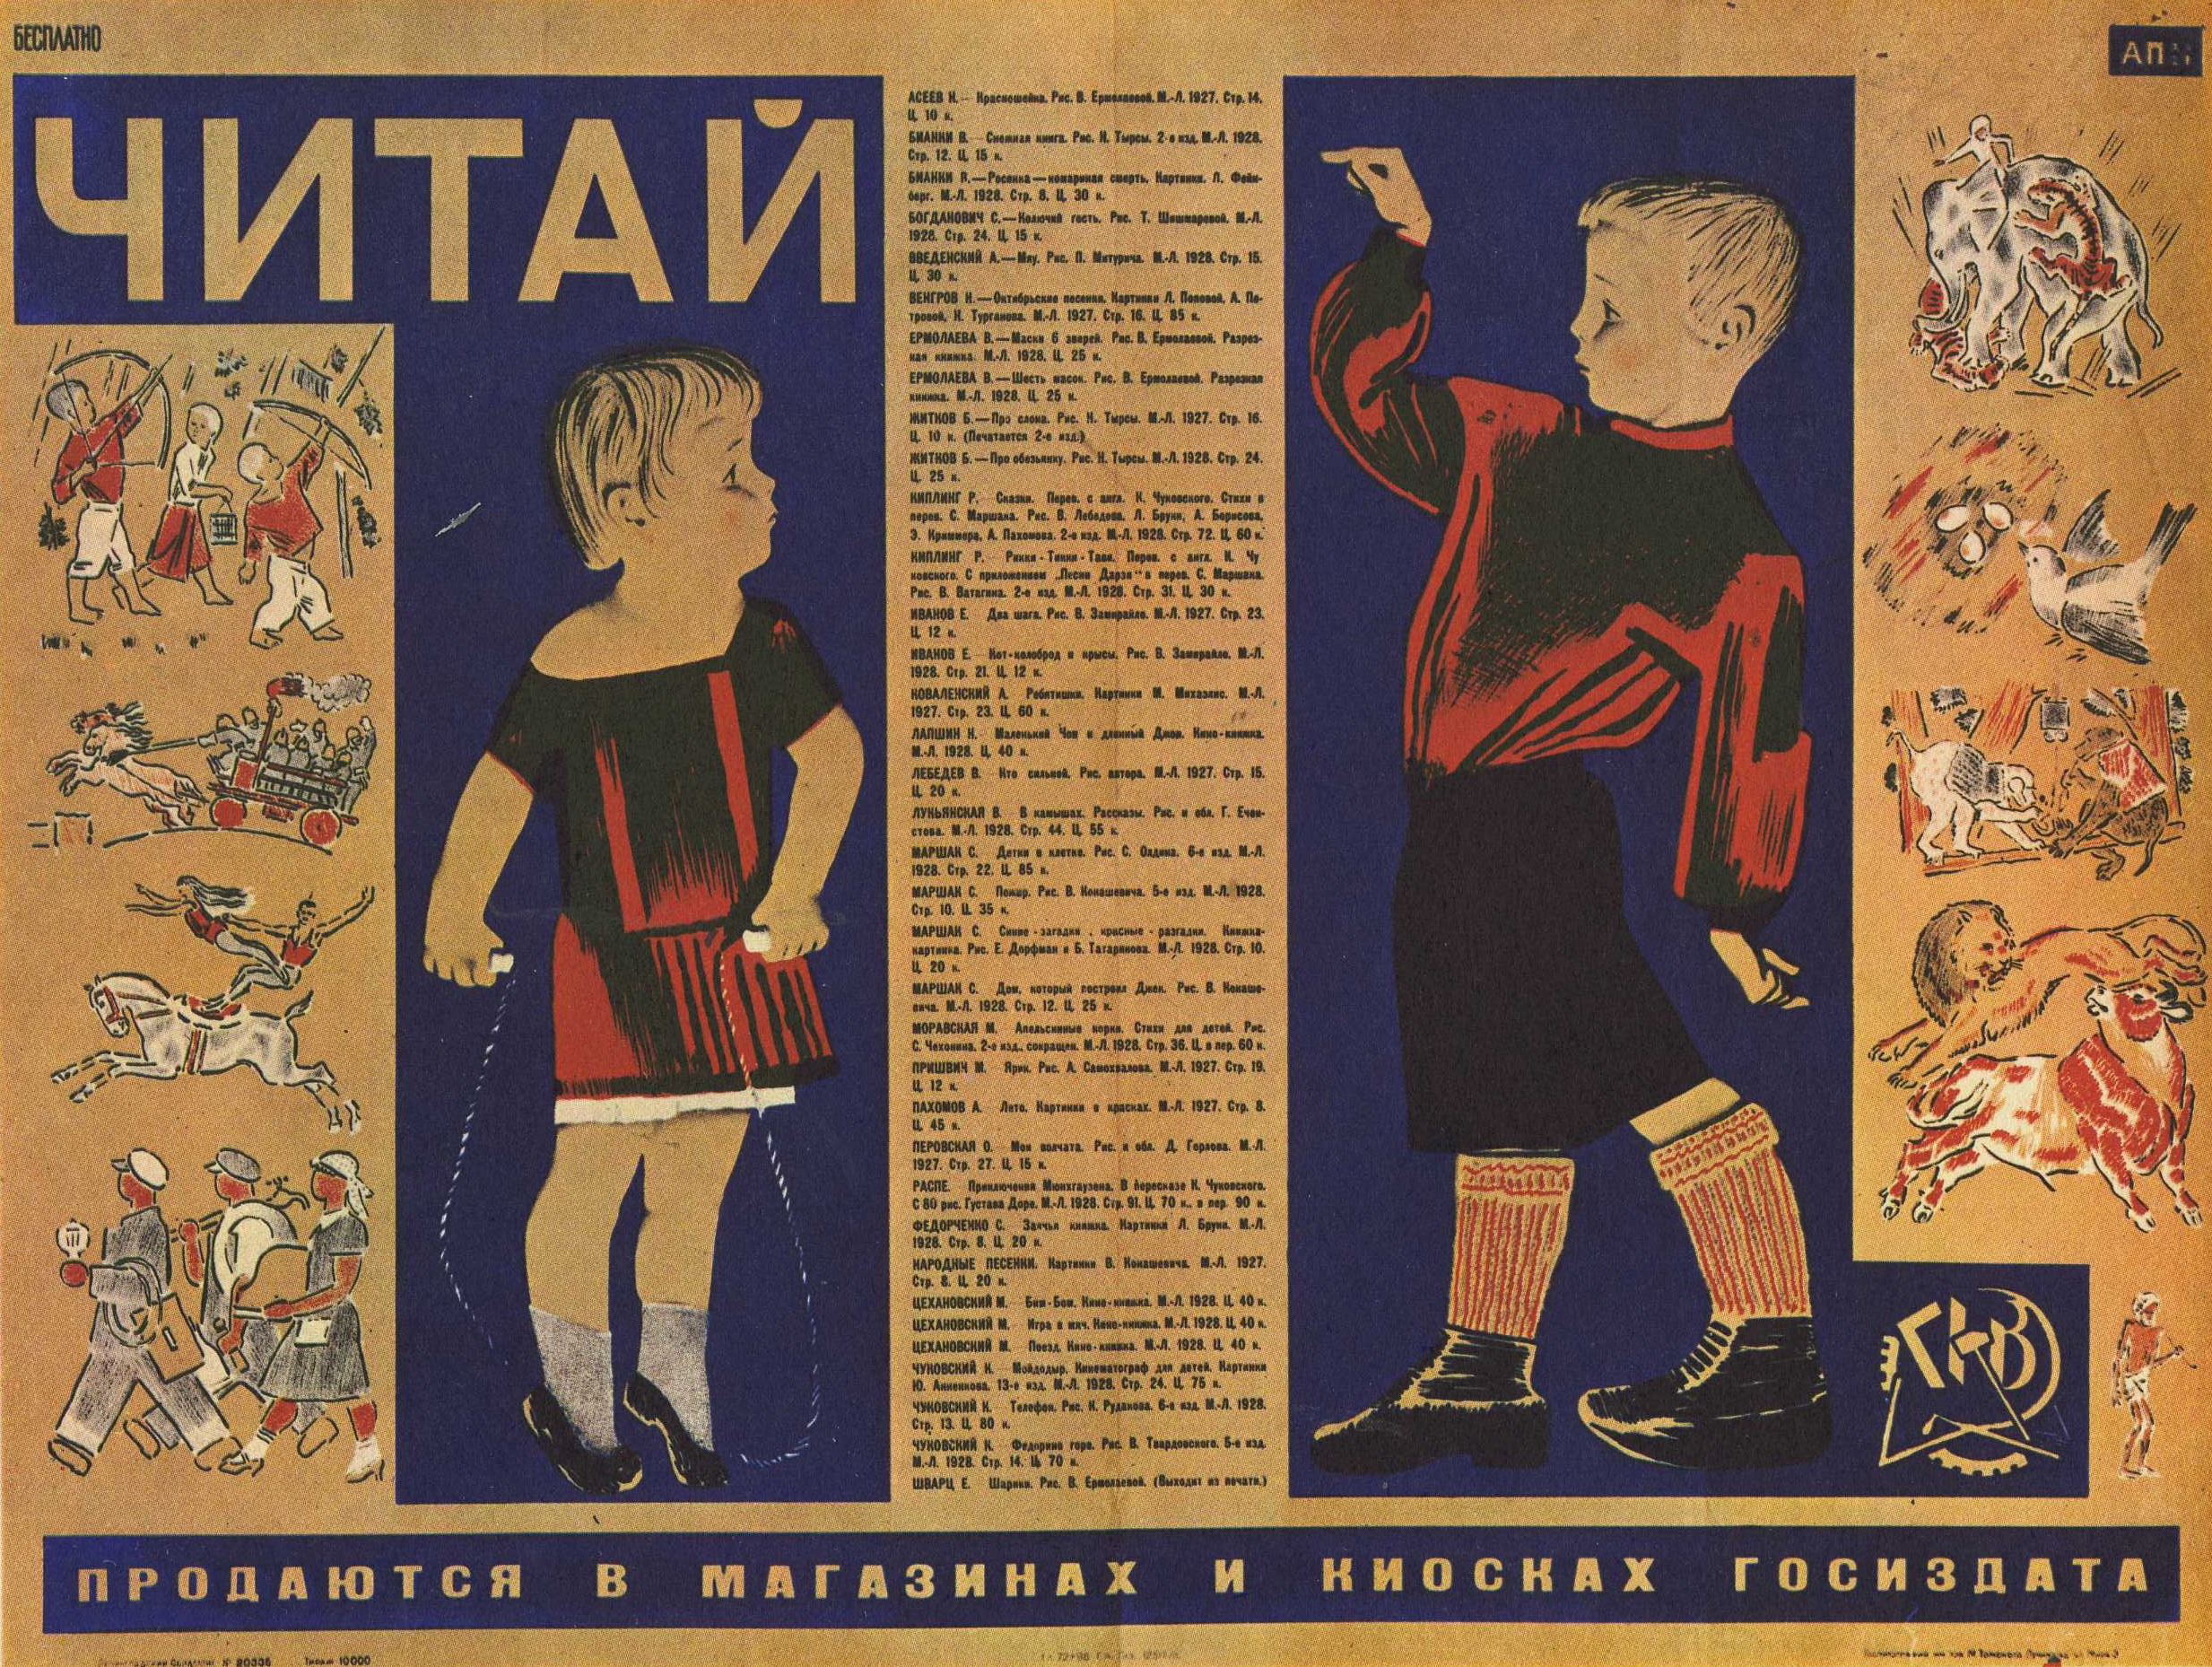 Произведения советской эпохи. Плакаты 20 годов. Советские рекламные плакаты 20х годов. Советские плакаты 20-х годов. Советский плакат 20-30-х годов.